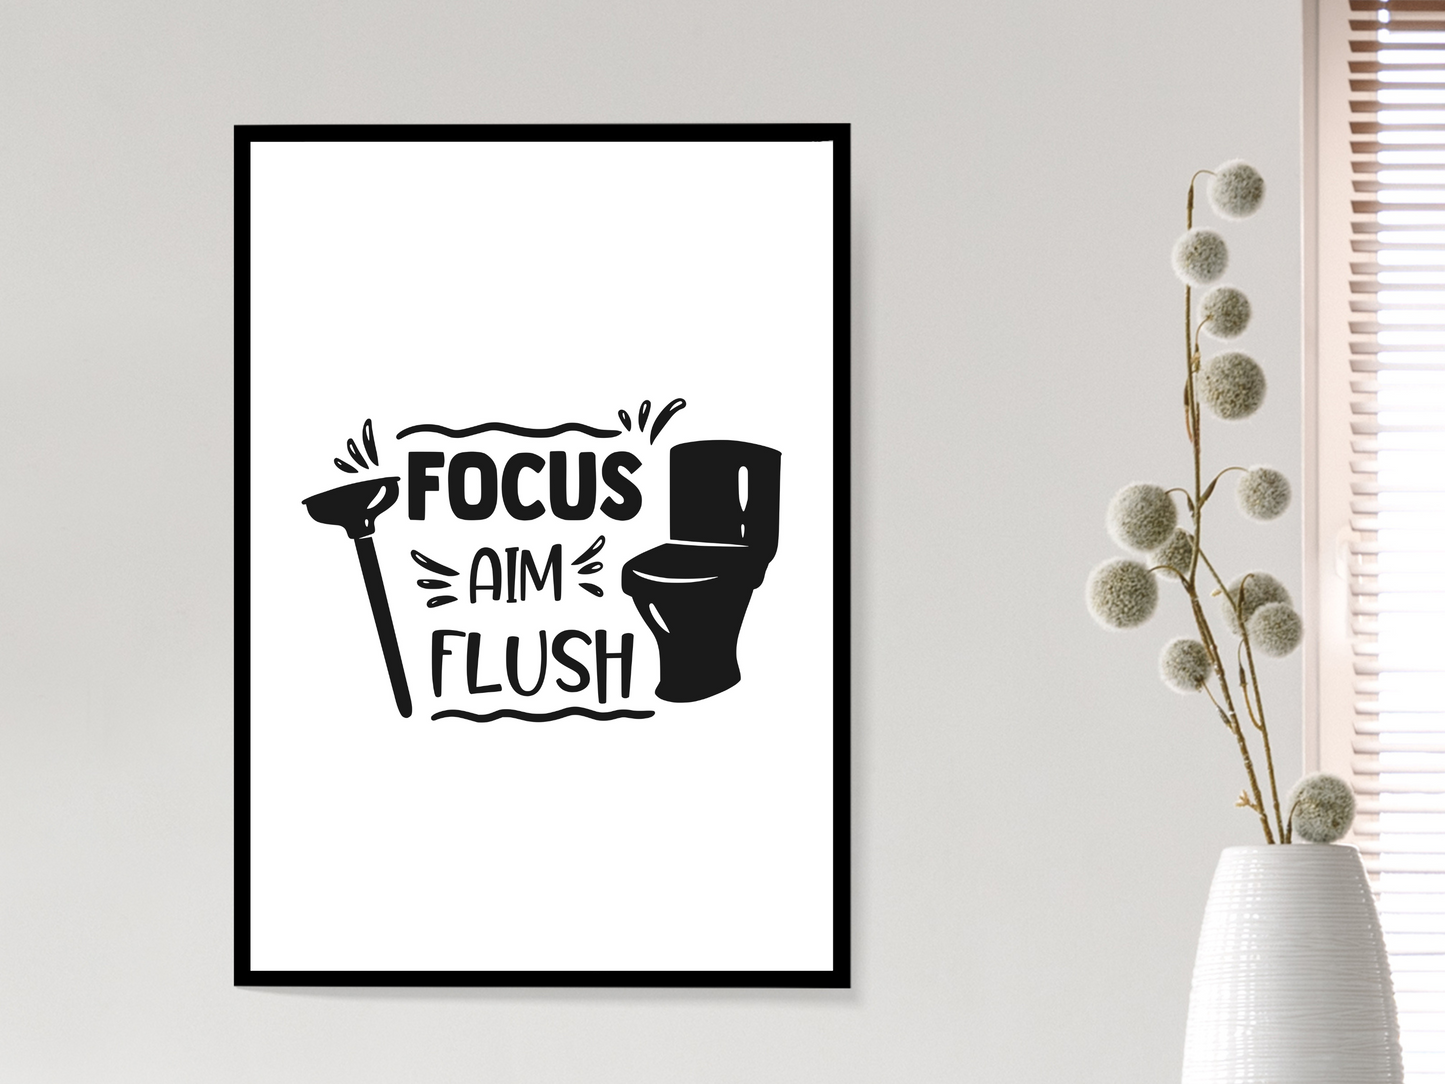 Focus, Aim, Flush